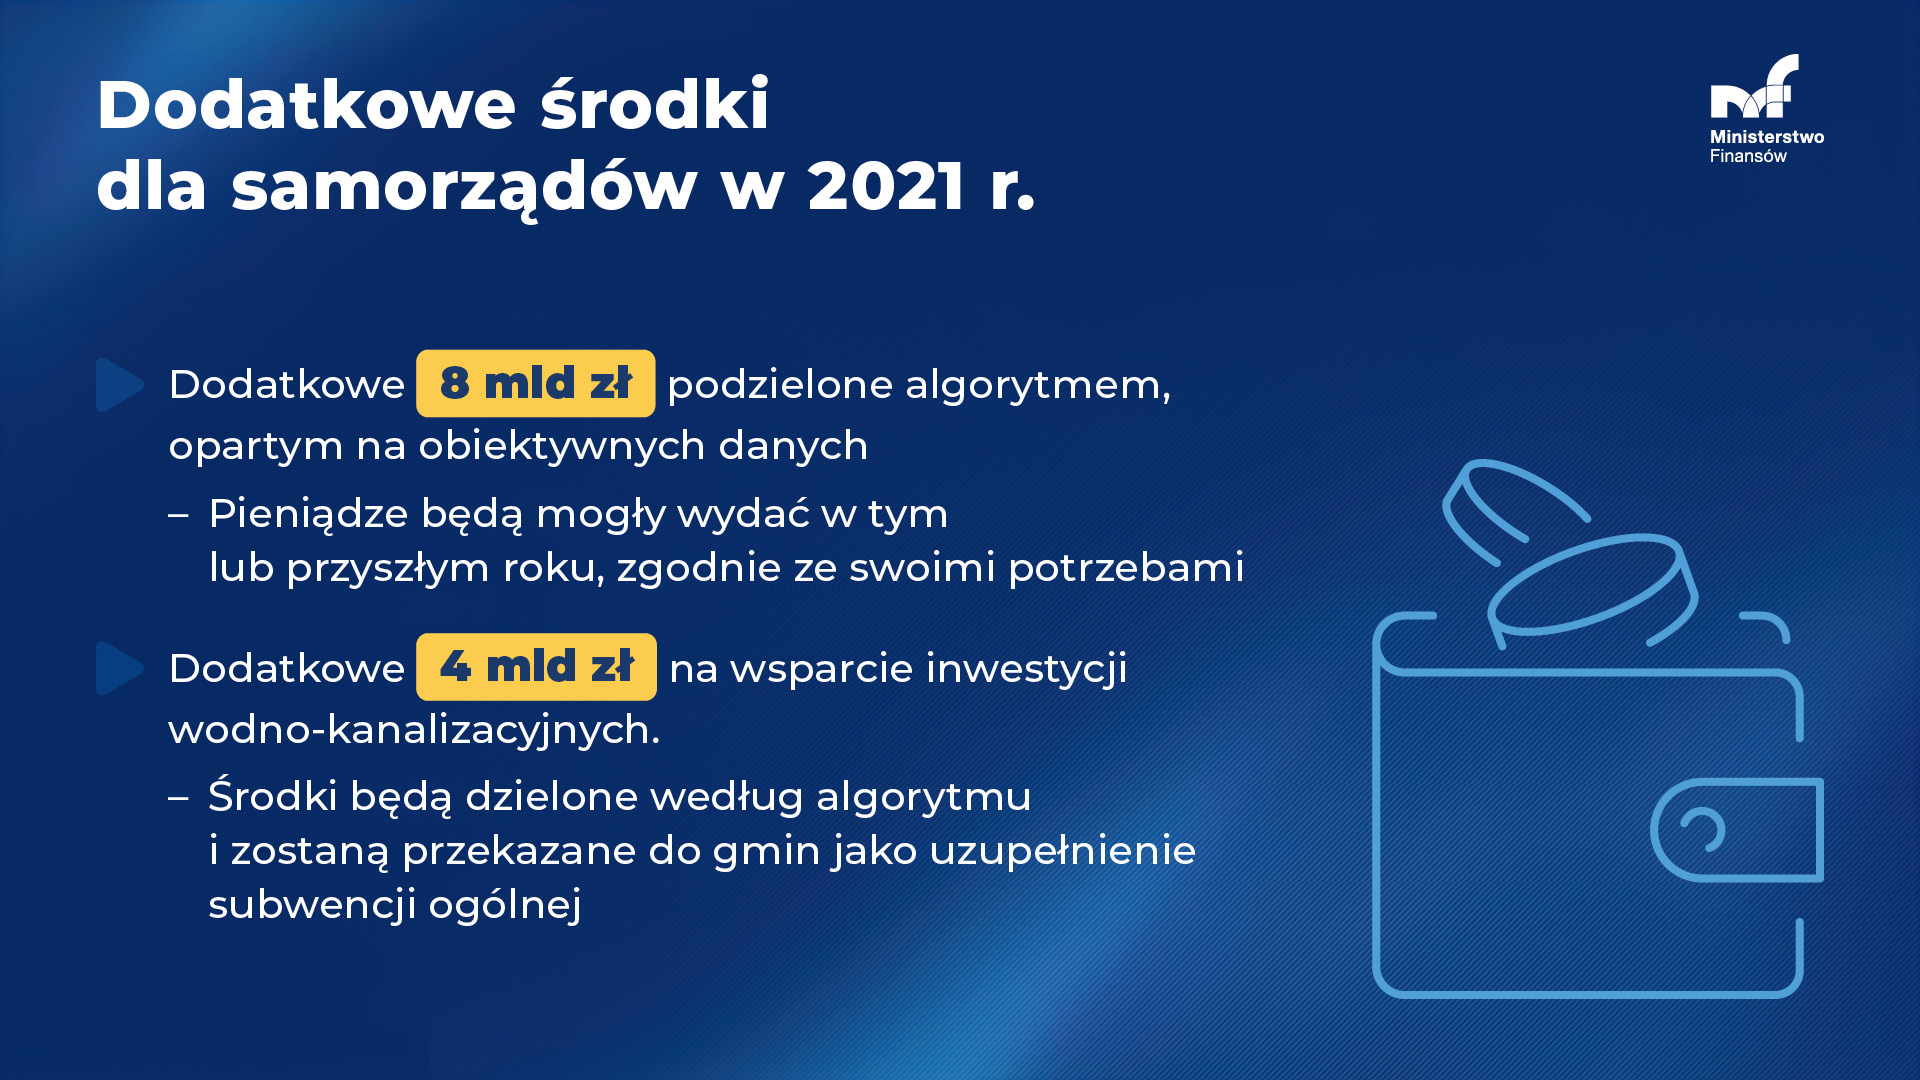 Dodatkowe środki dla samorządów w 2021 r.